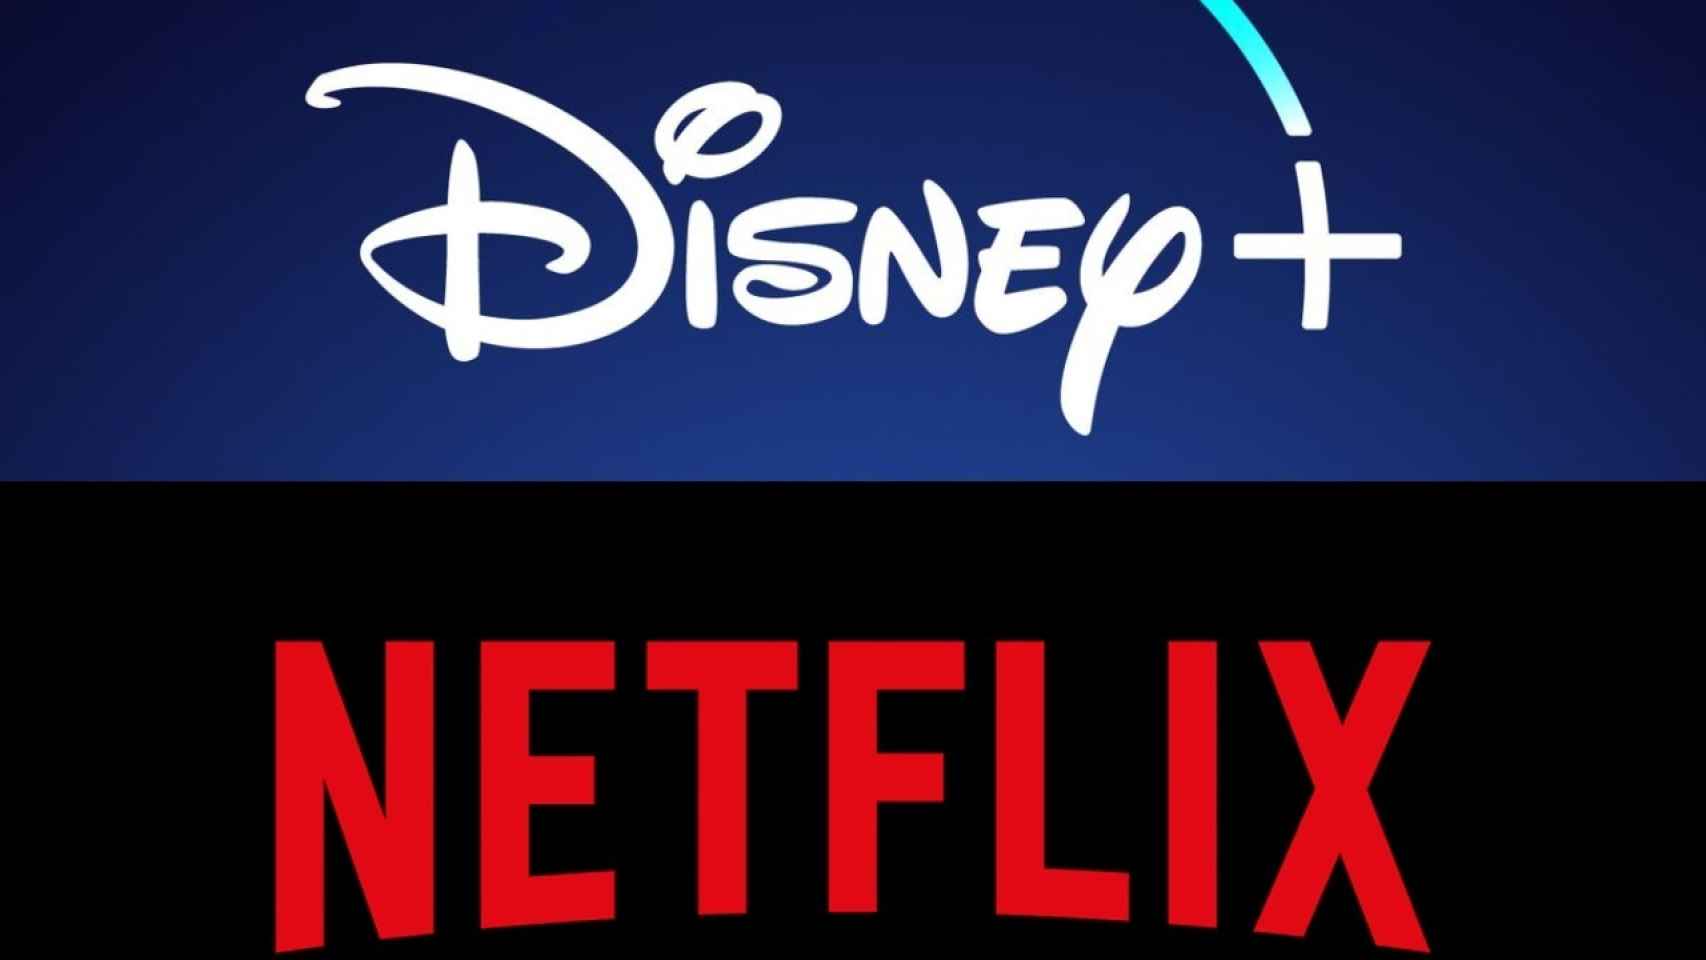 Imagen de los logos de Disney+ y Netflix.